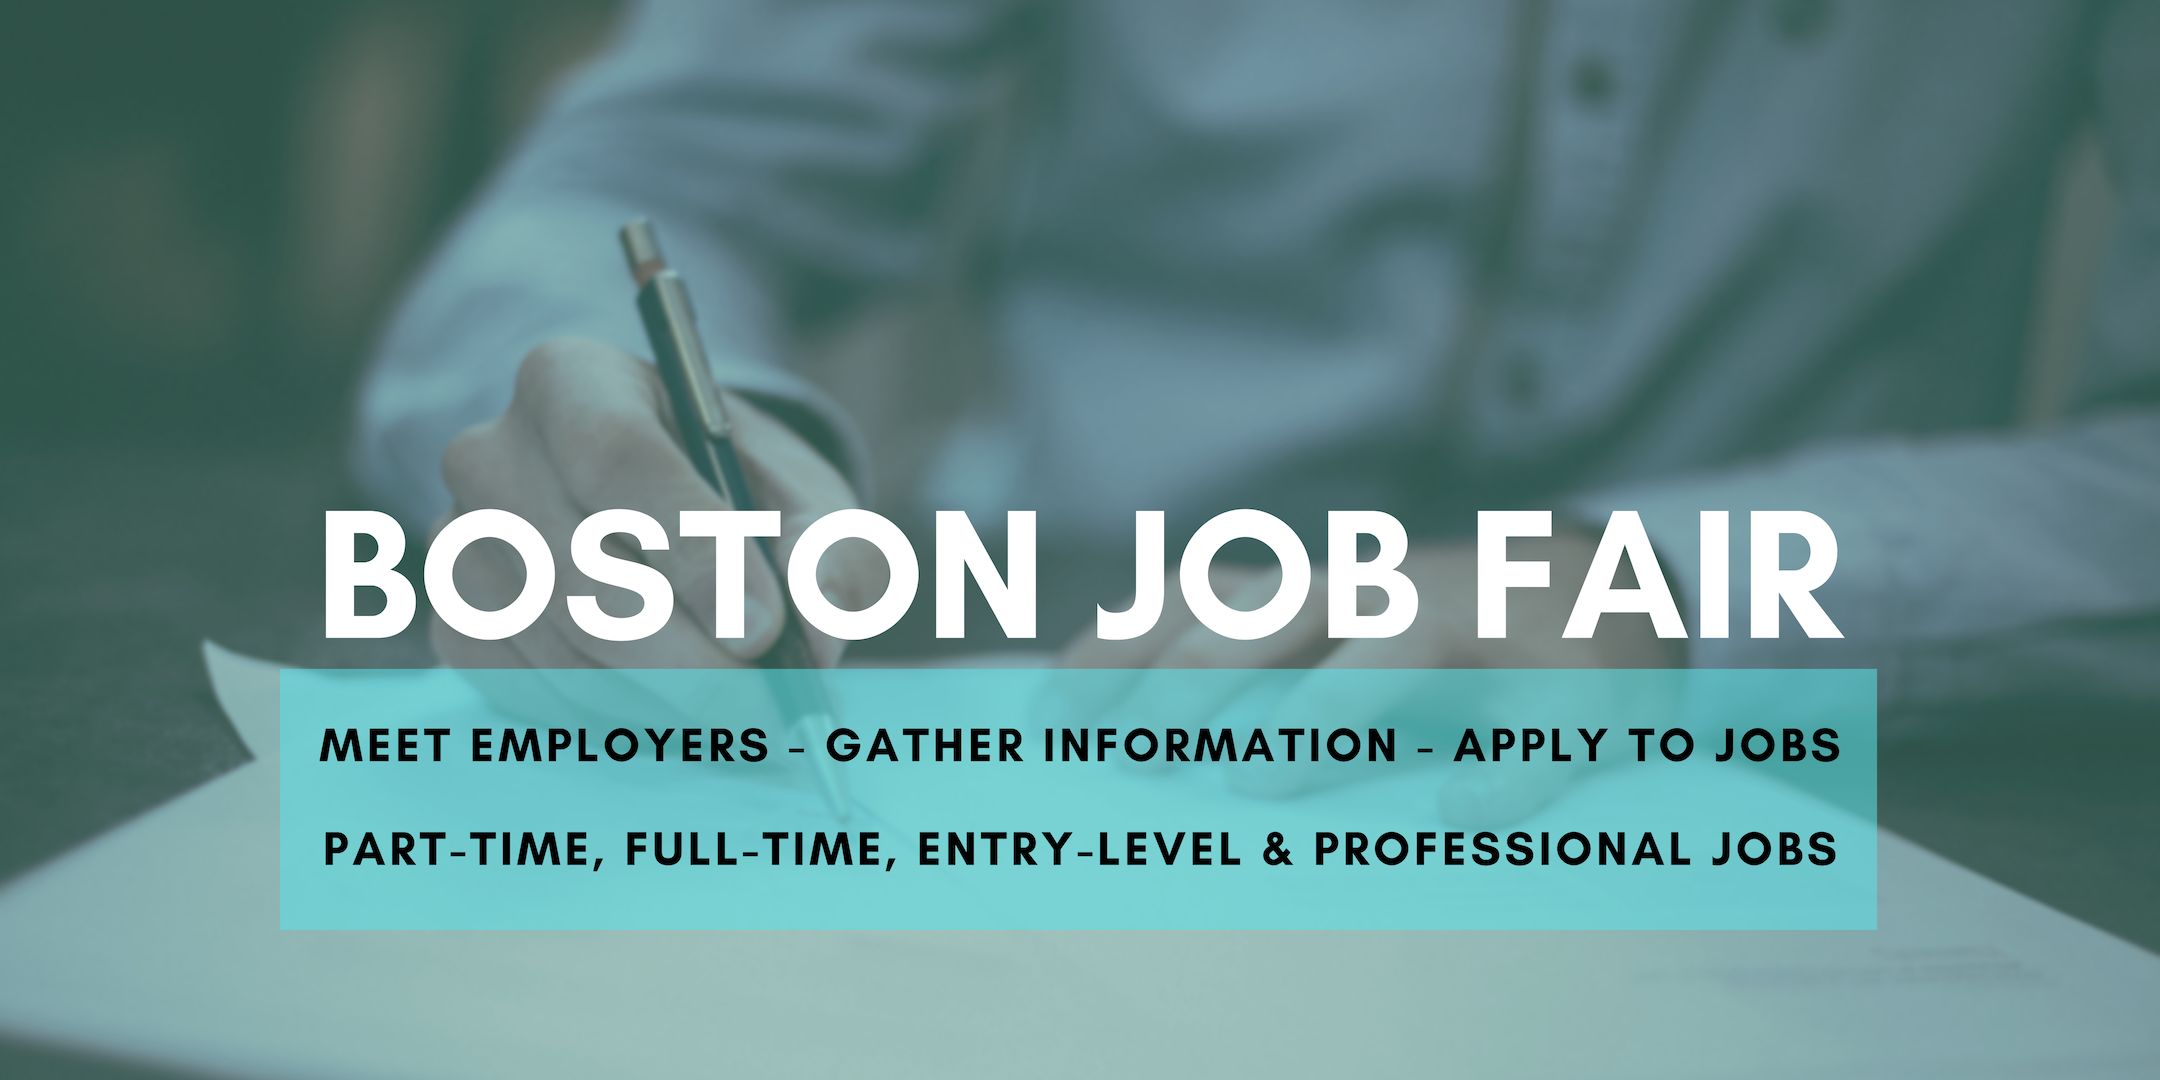 Boston Job Fair - April 7, 2020 - Career Fair